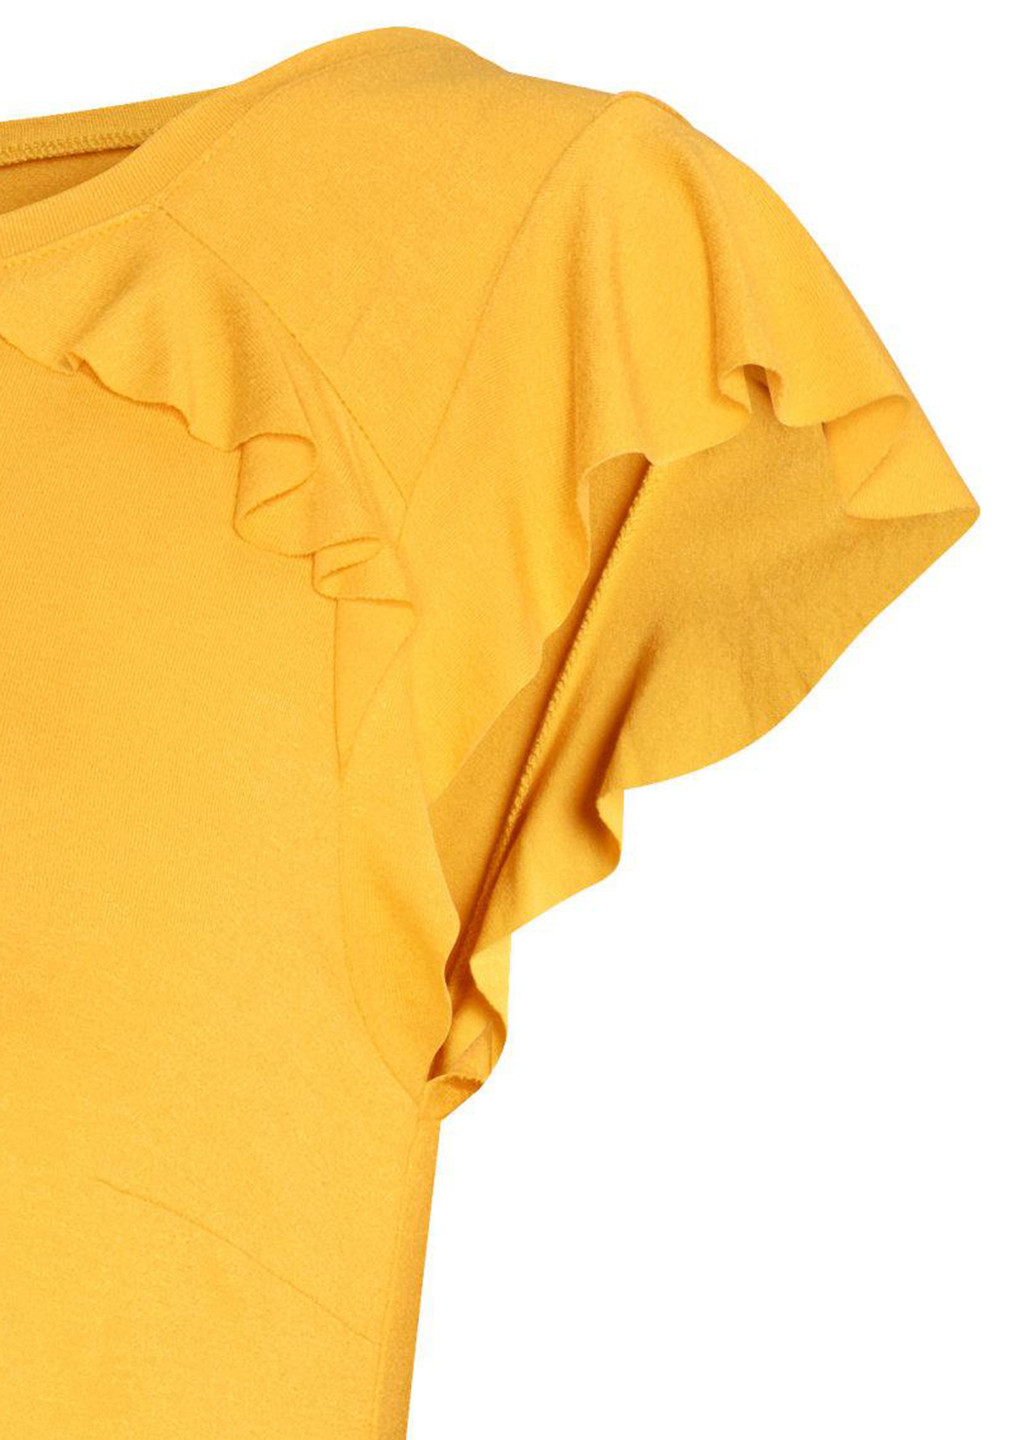 Желтая летняя футболка для беременных H&M